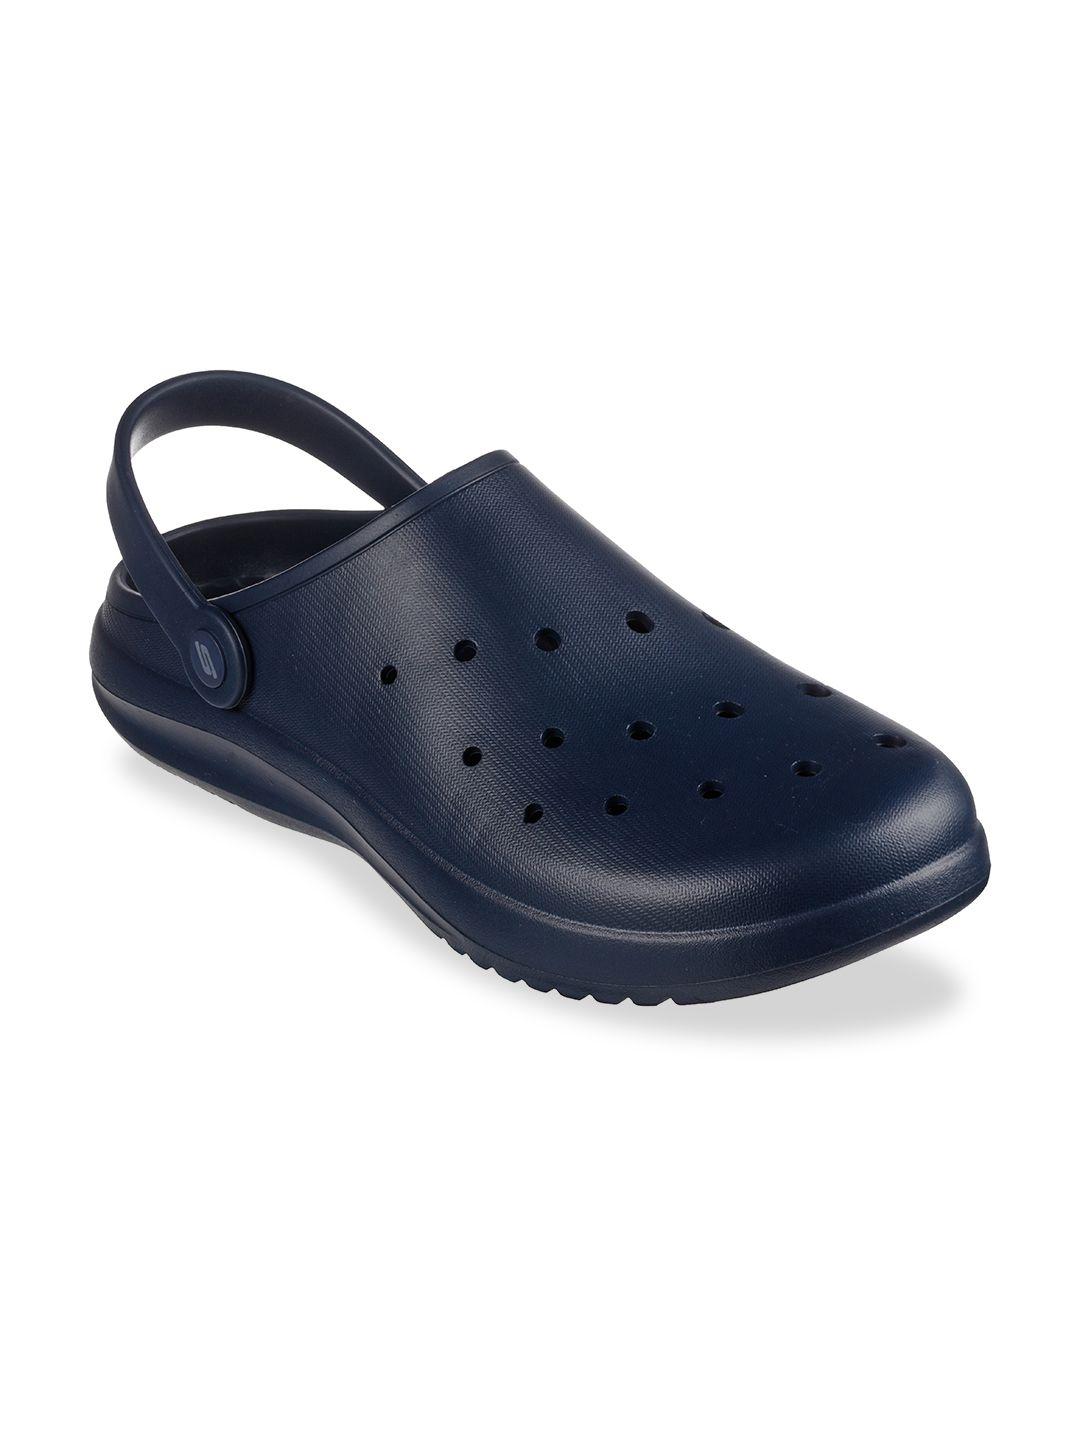 skechers-men-navy-blue-sandals